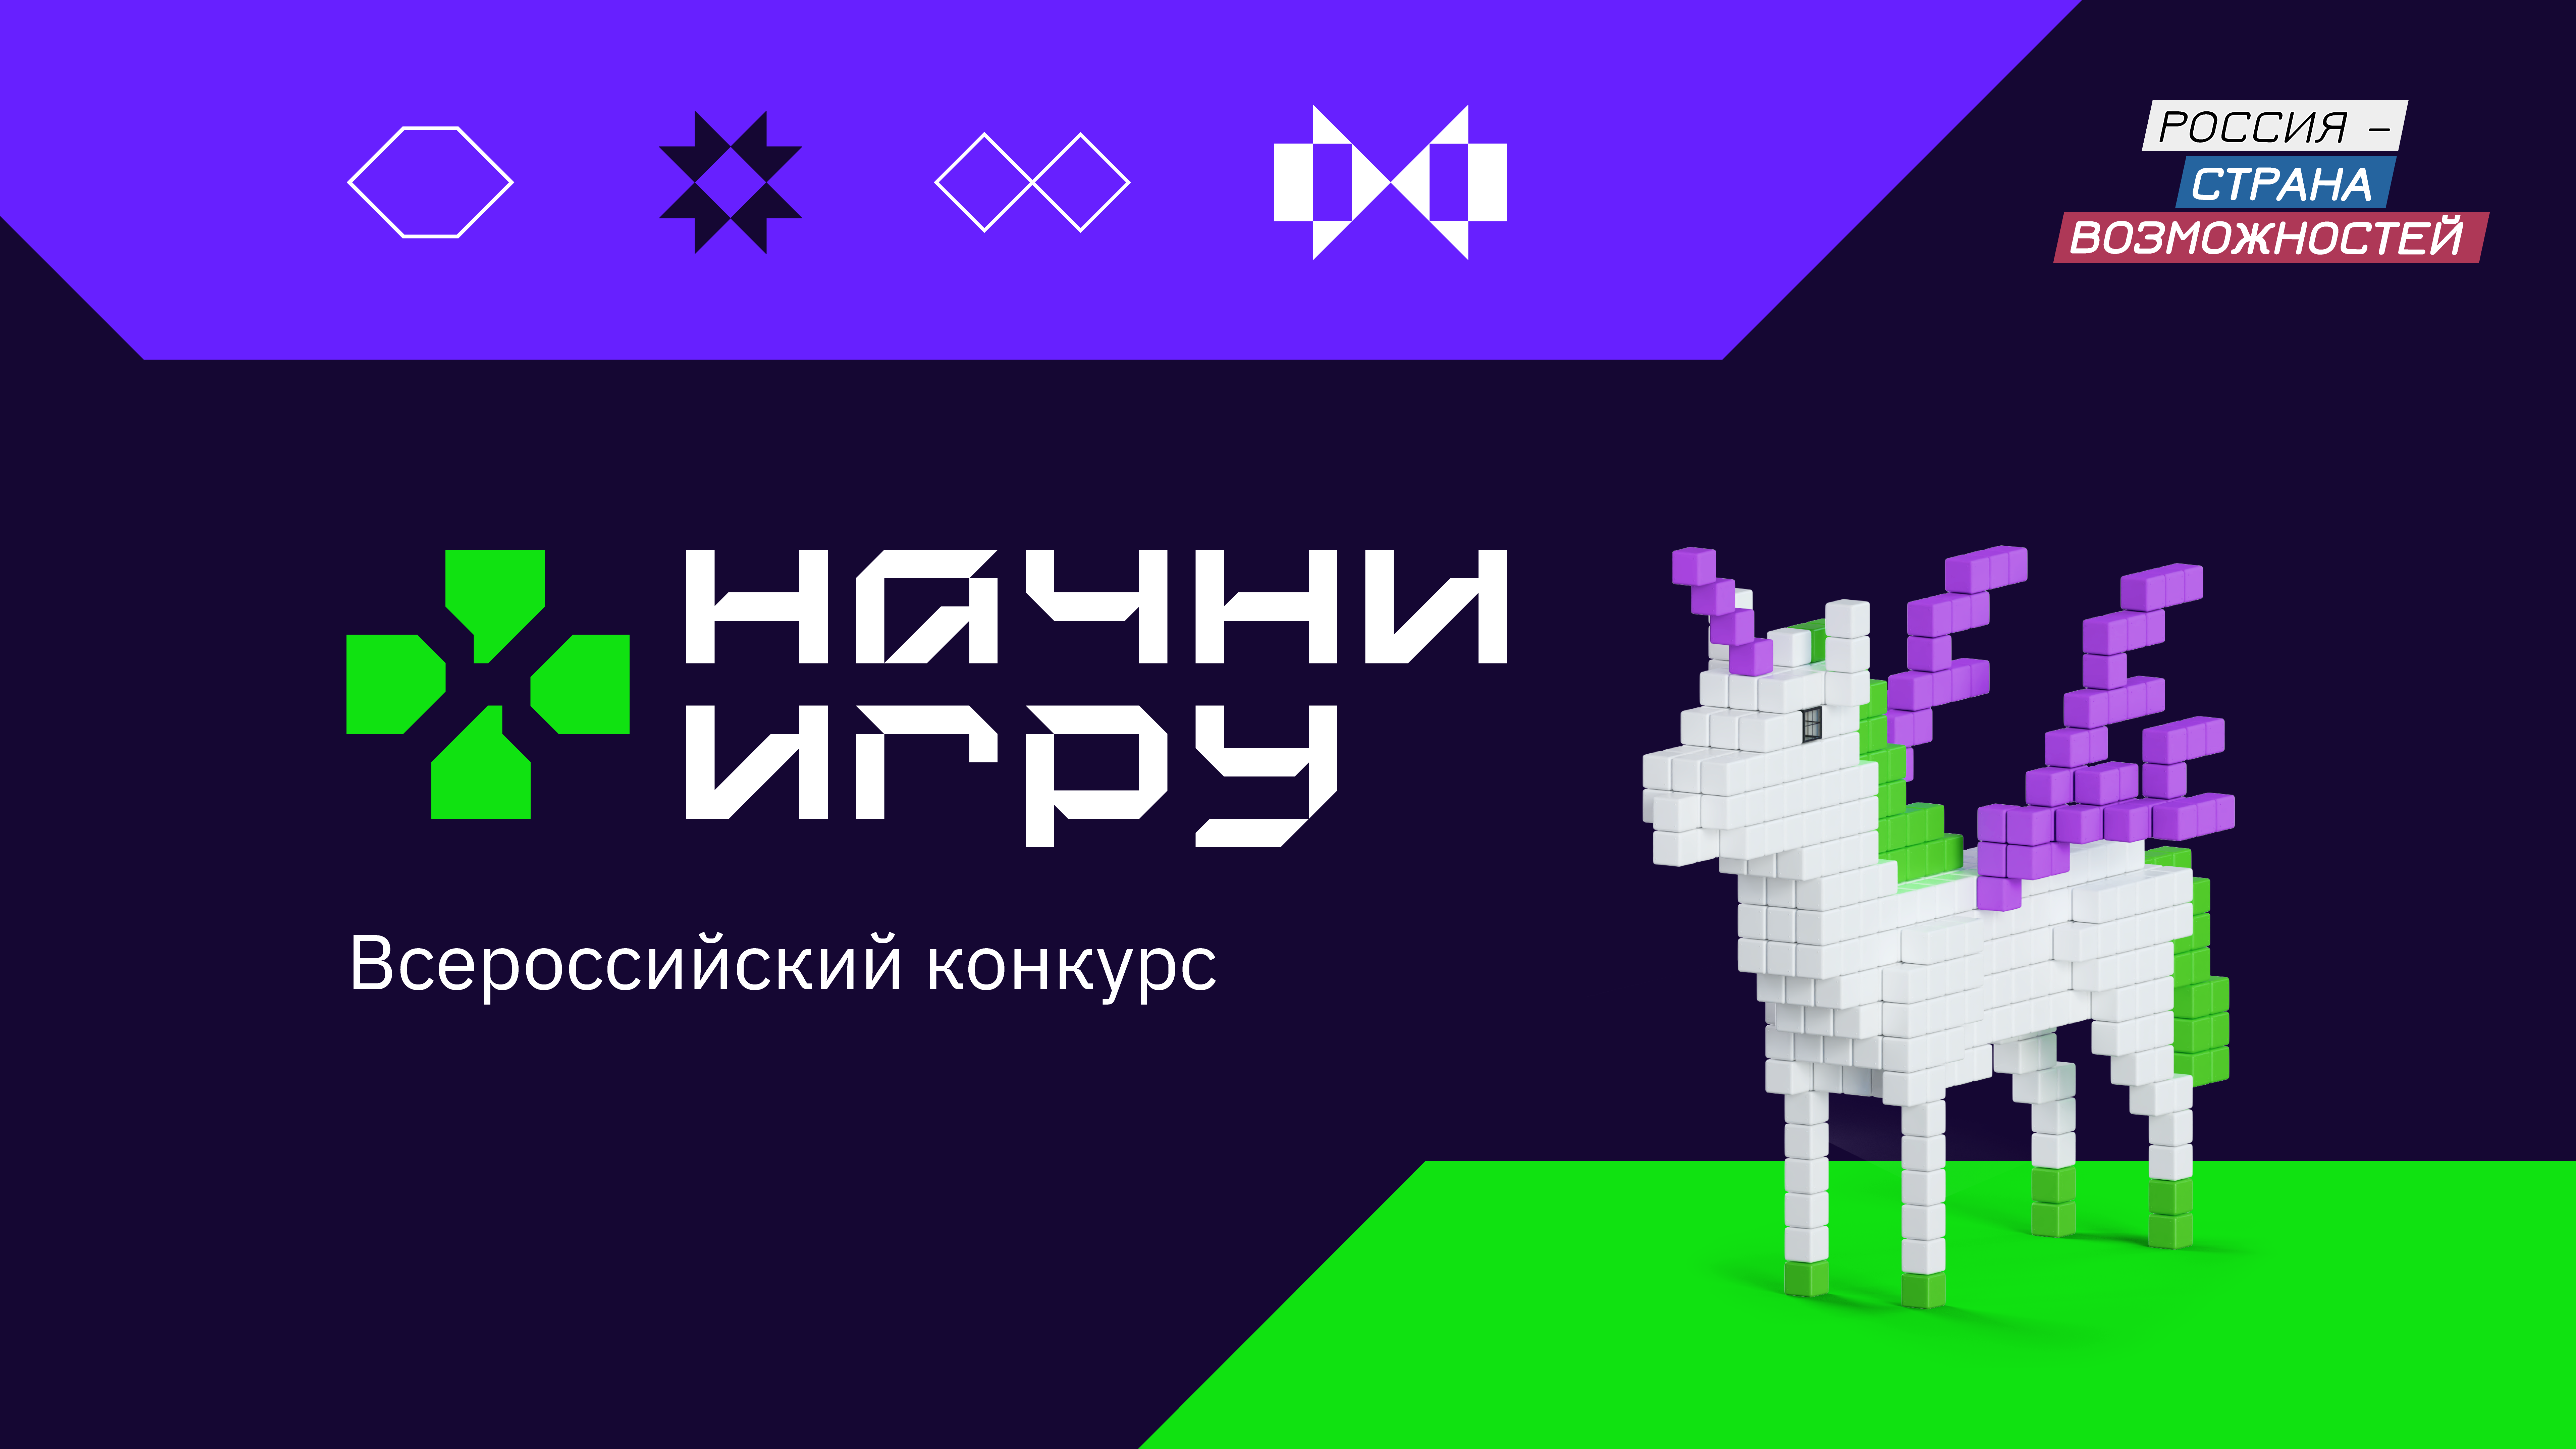 Всероссийский конкурс «Начни игру» — шанс построить карьеру в игровой индустрии